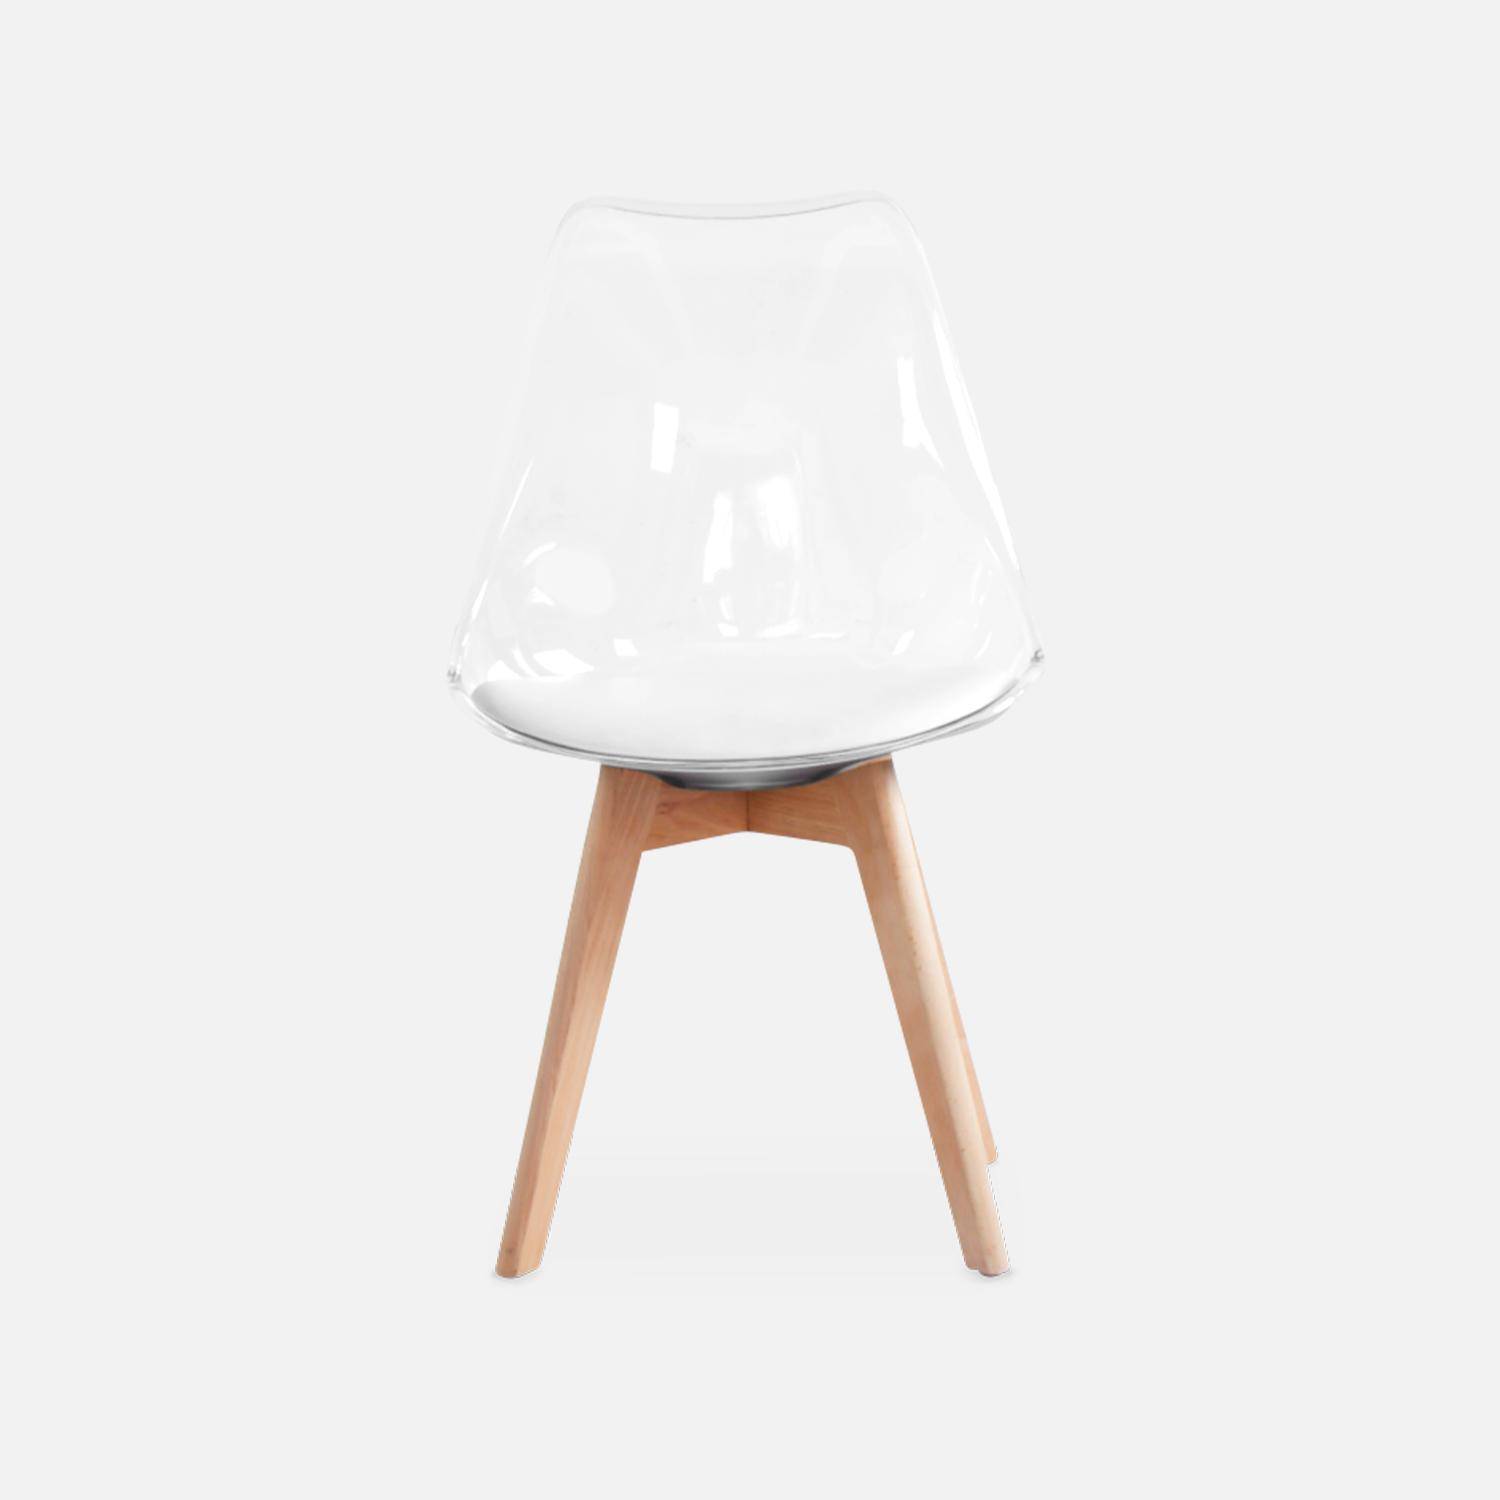 Juego de 4 sillas escandinavas - Lagertha - patas de madera, asientos individuales, cojín blanco, carcasa transparente ,sweeek,Photo8